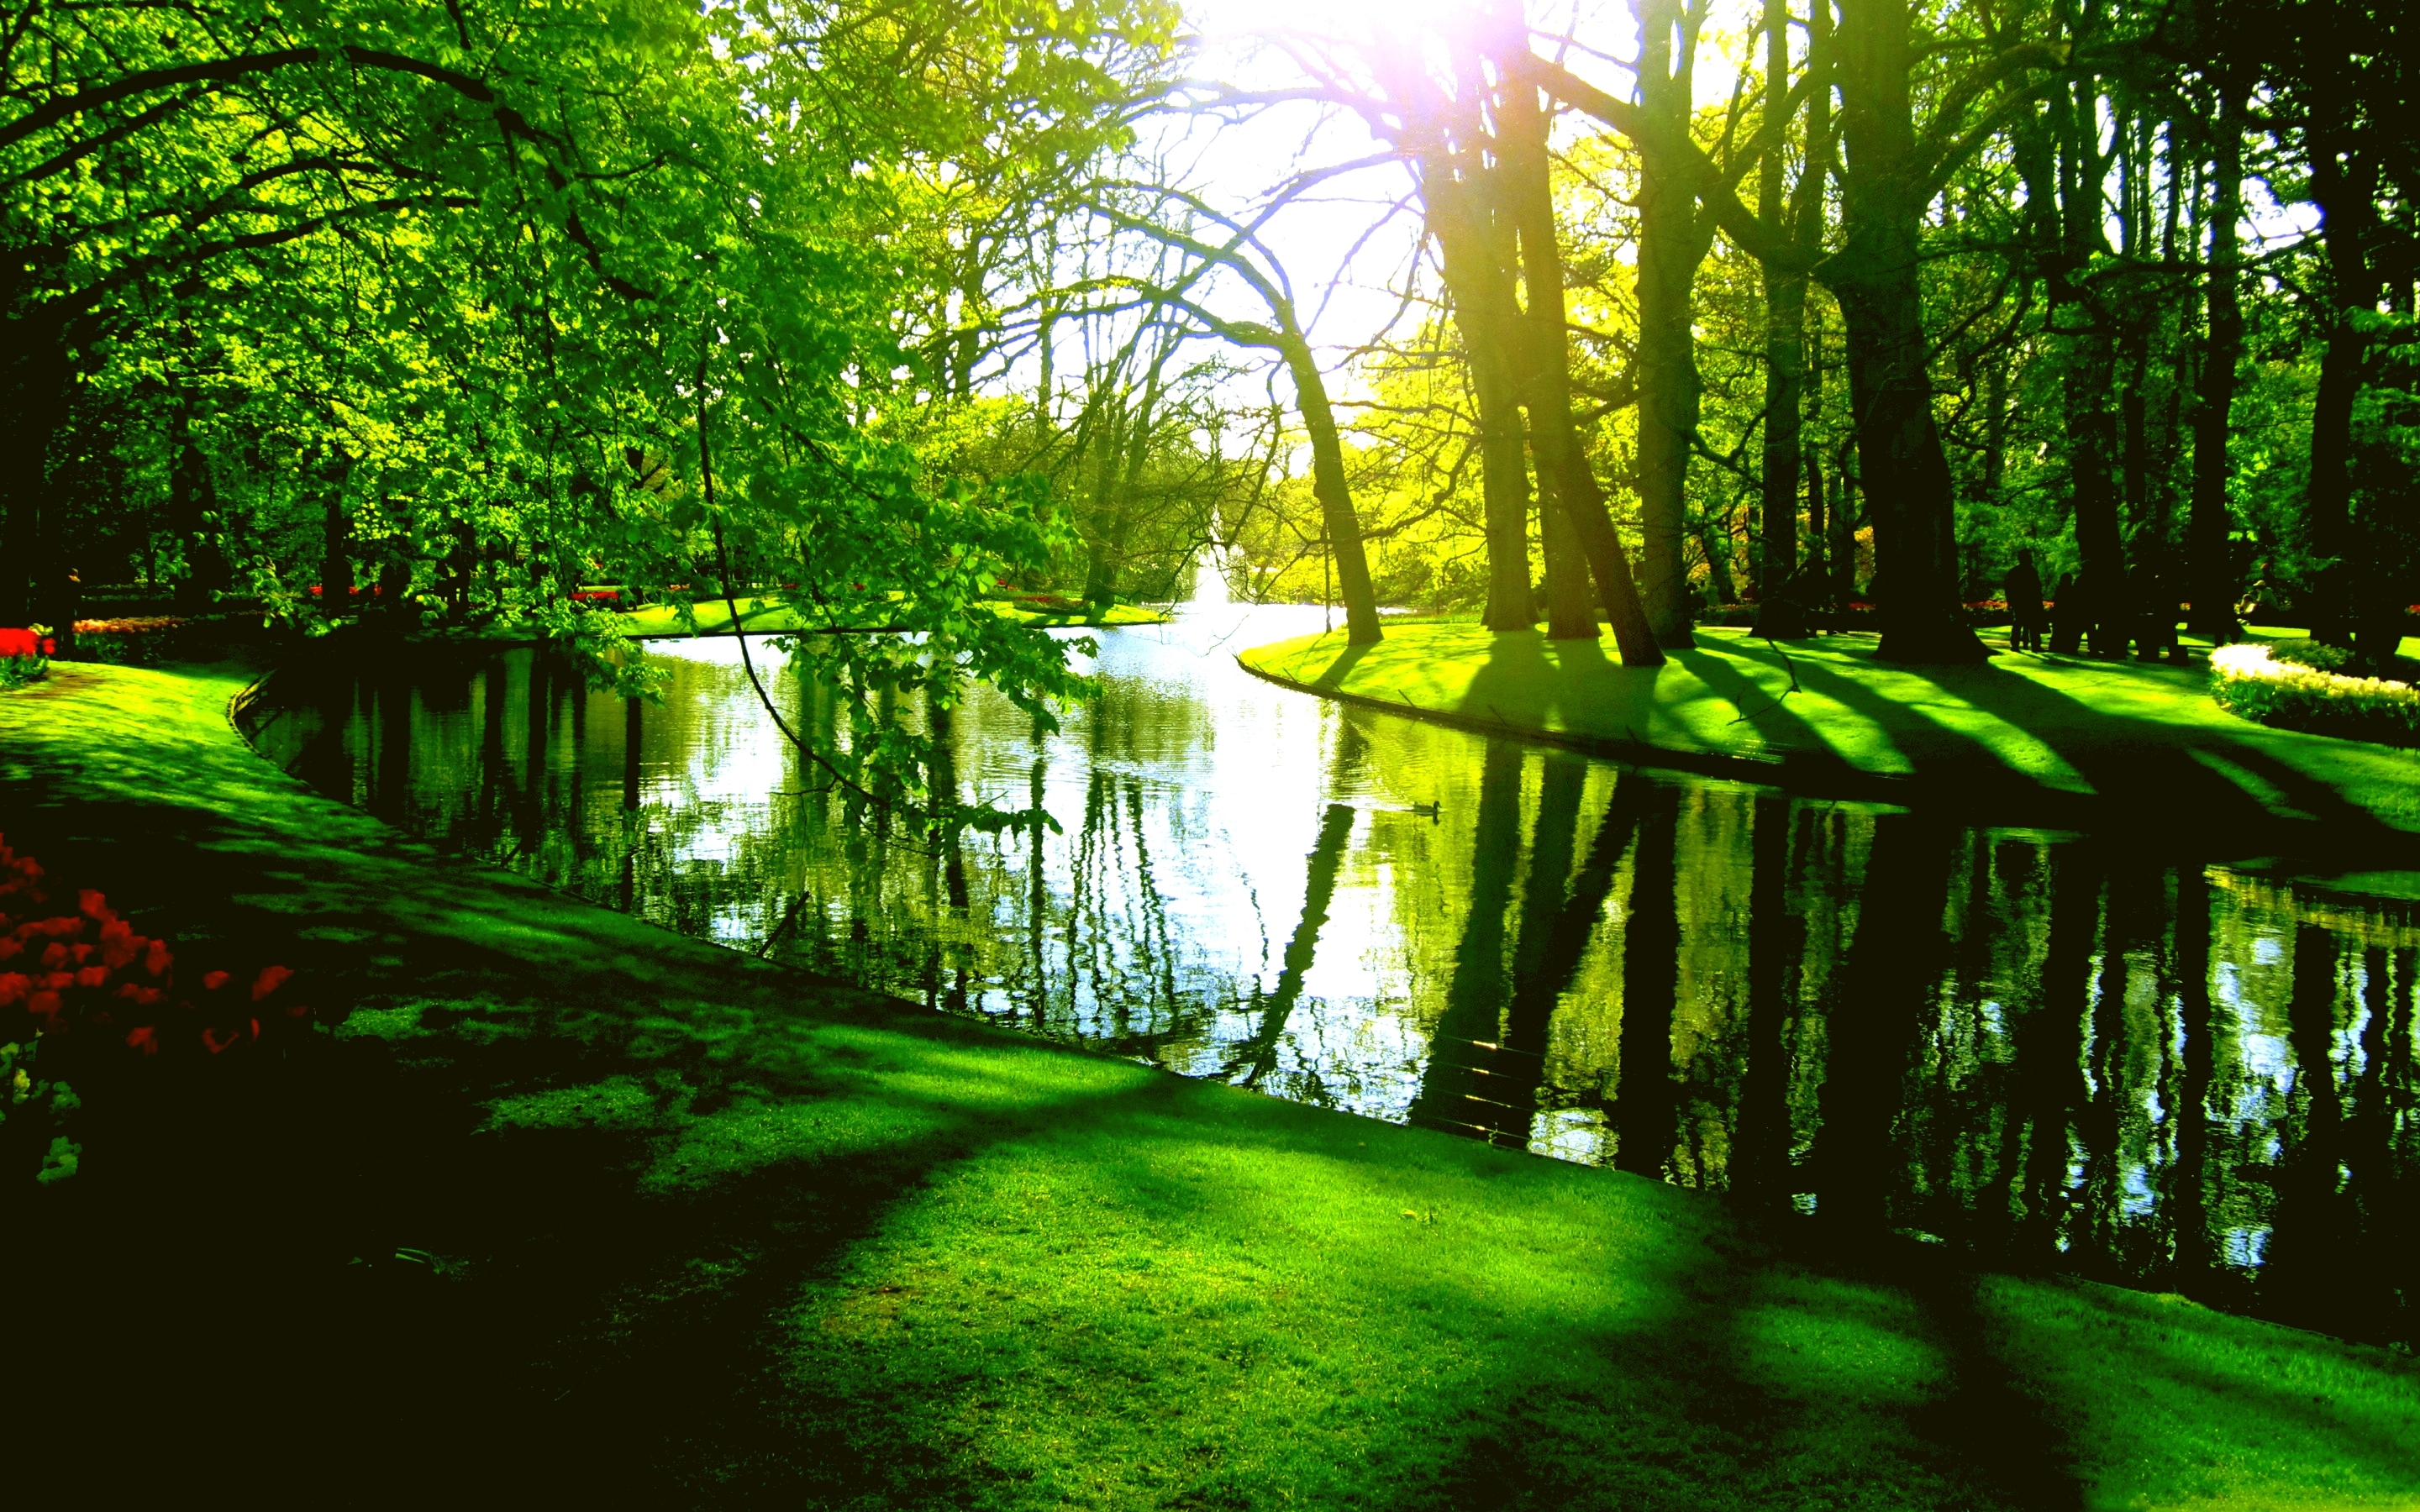 Скачать картинку Река, Парк, Дерево, Зеленый, Пруд, Весна, Фотографии в телефон бесплатно.